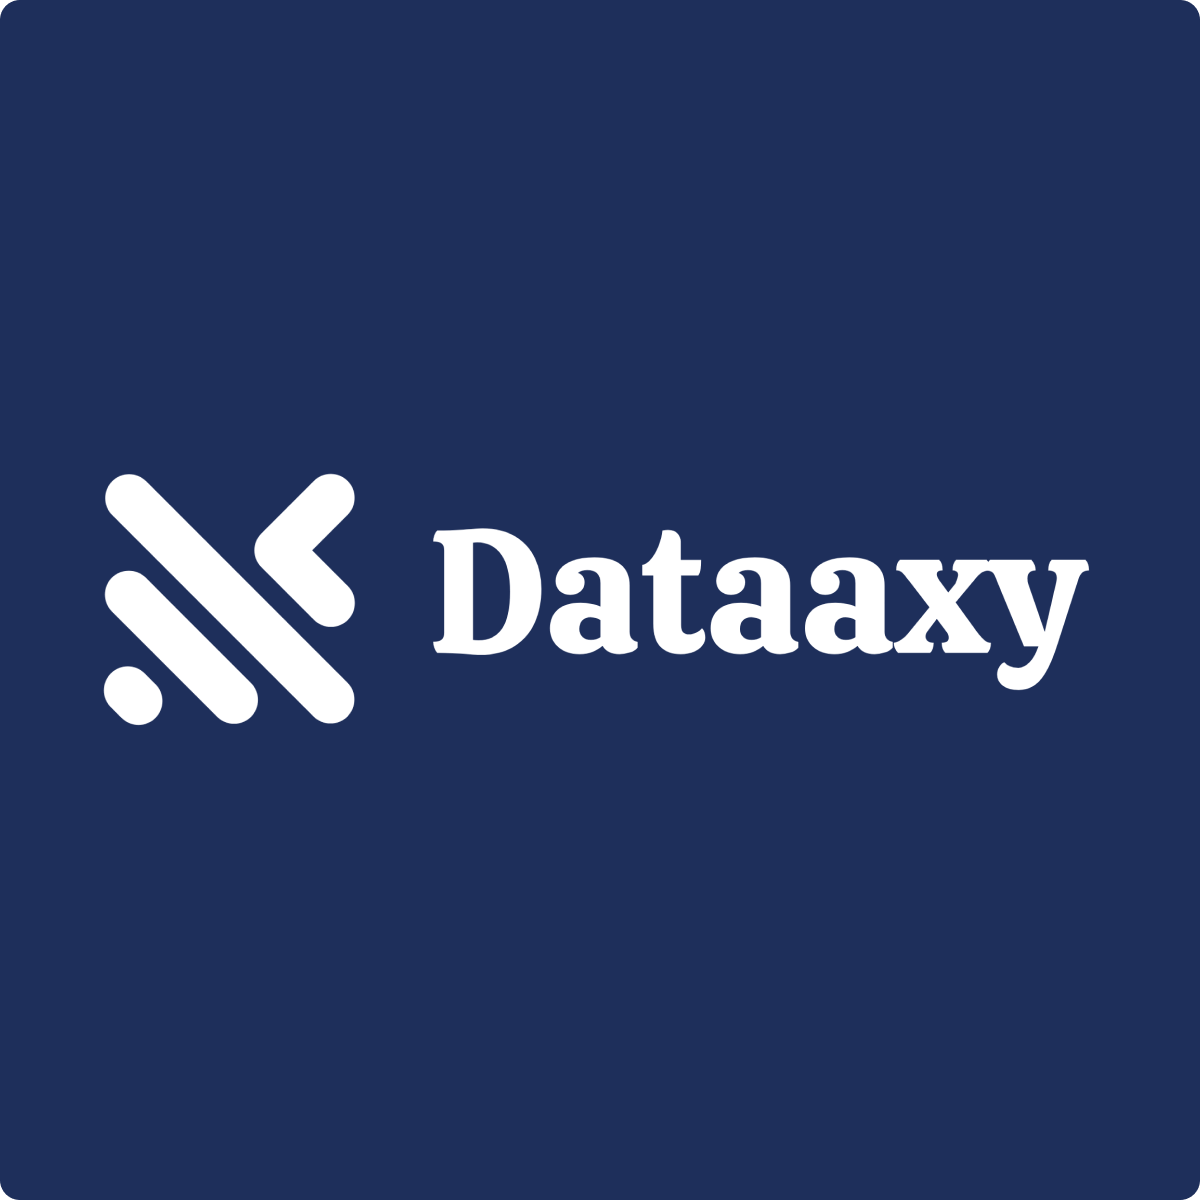 dataaxy logo
